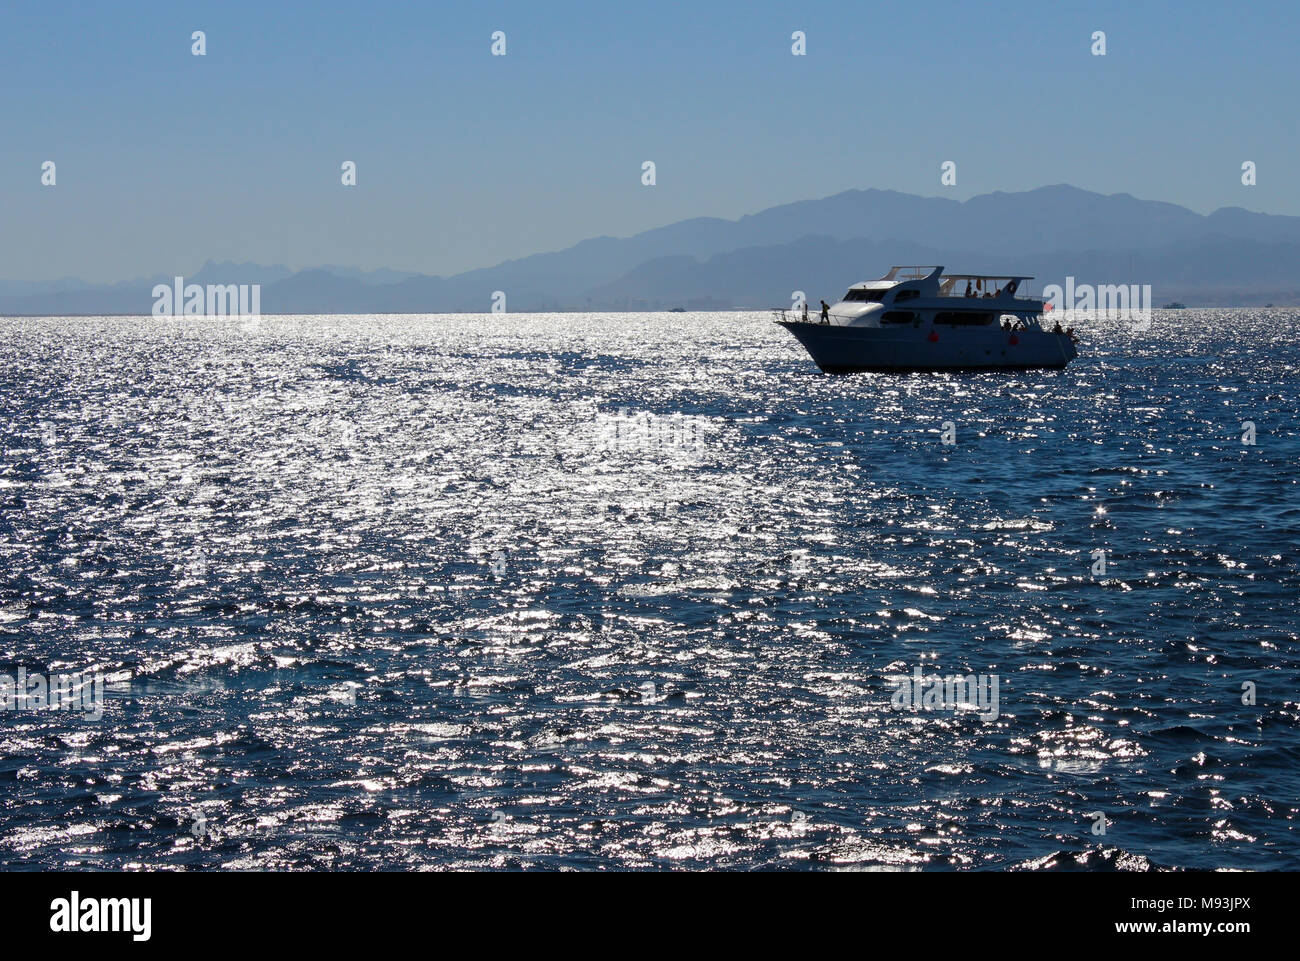 Paysage sur une journée ensoleillée avec vue sur la mer, sur un bateau et les montagnes au loin. Banque D'Images